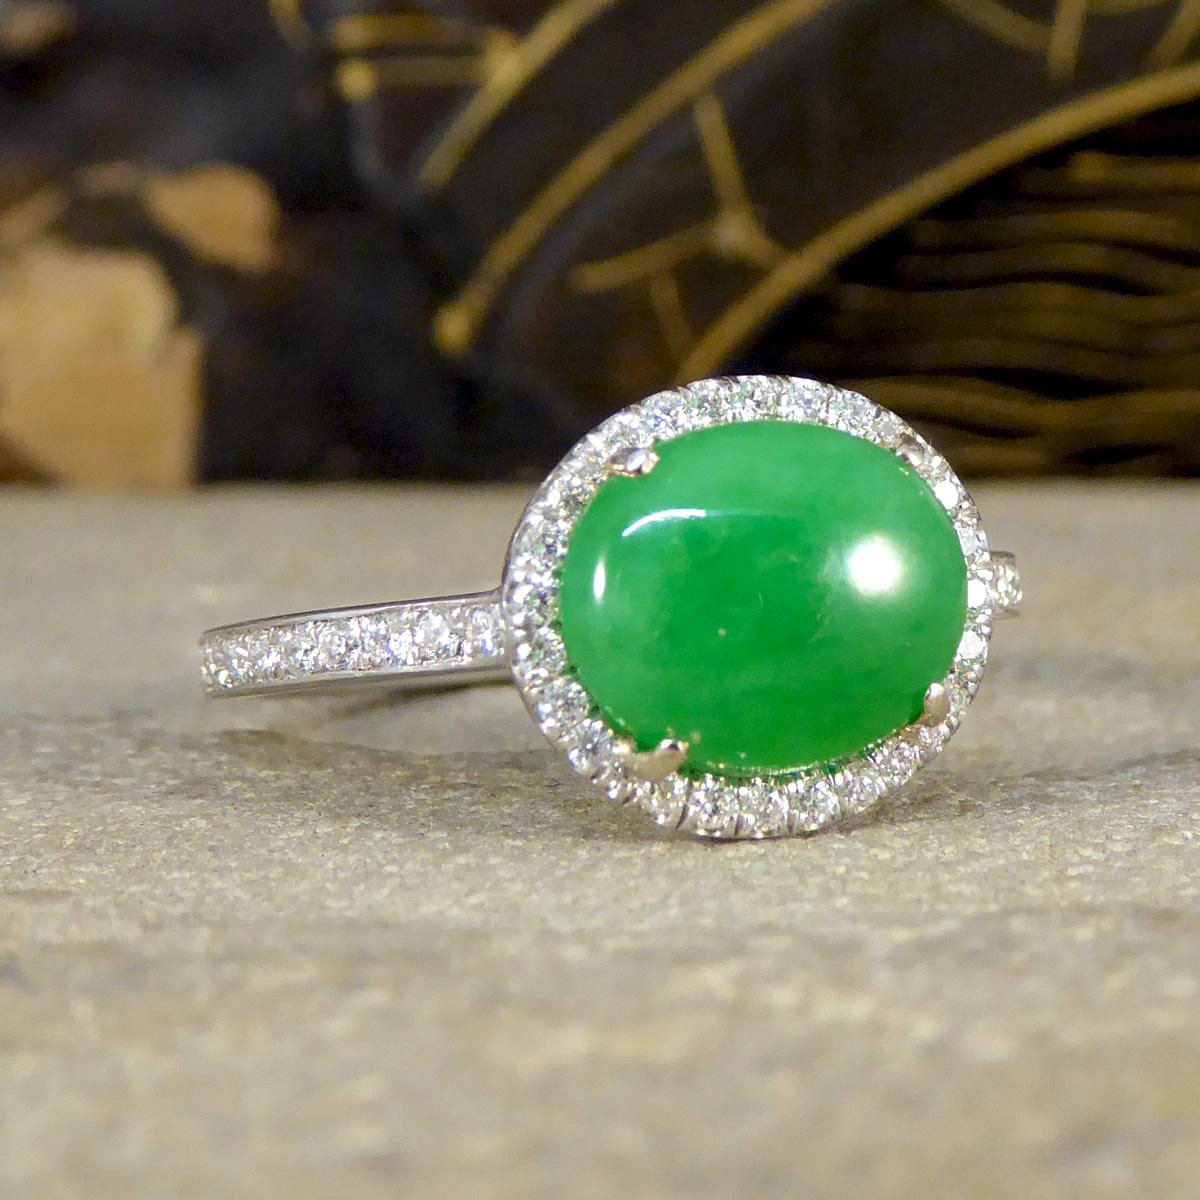 Der zierlichste und eleganteste Ring aus Jade und Diamanten. In diesem Ring ist eine helle und lebendige Jade mit den Maßen 9,5 x 7,7 mm enthalten, die von vier Krallen aus 18-karätigem Gelbgold sicher gehalten wird. Um den Jadestein herum sind 28